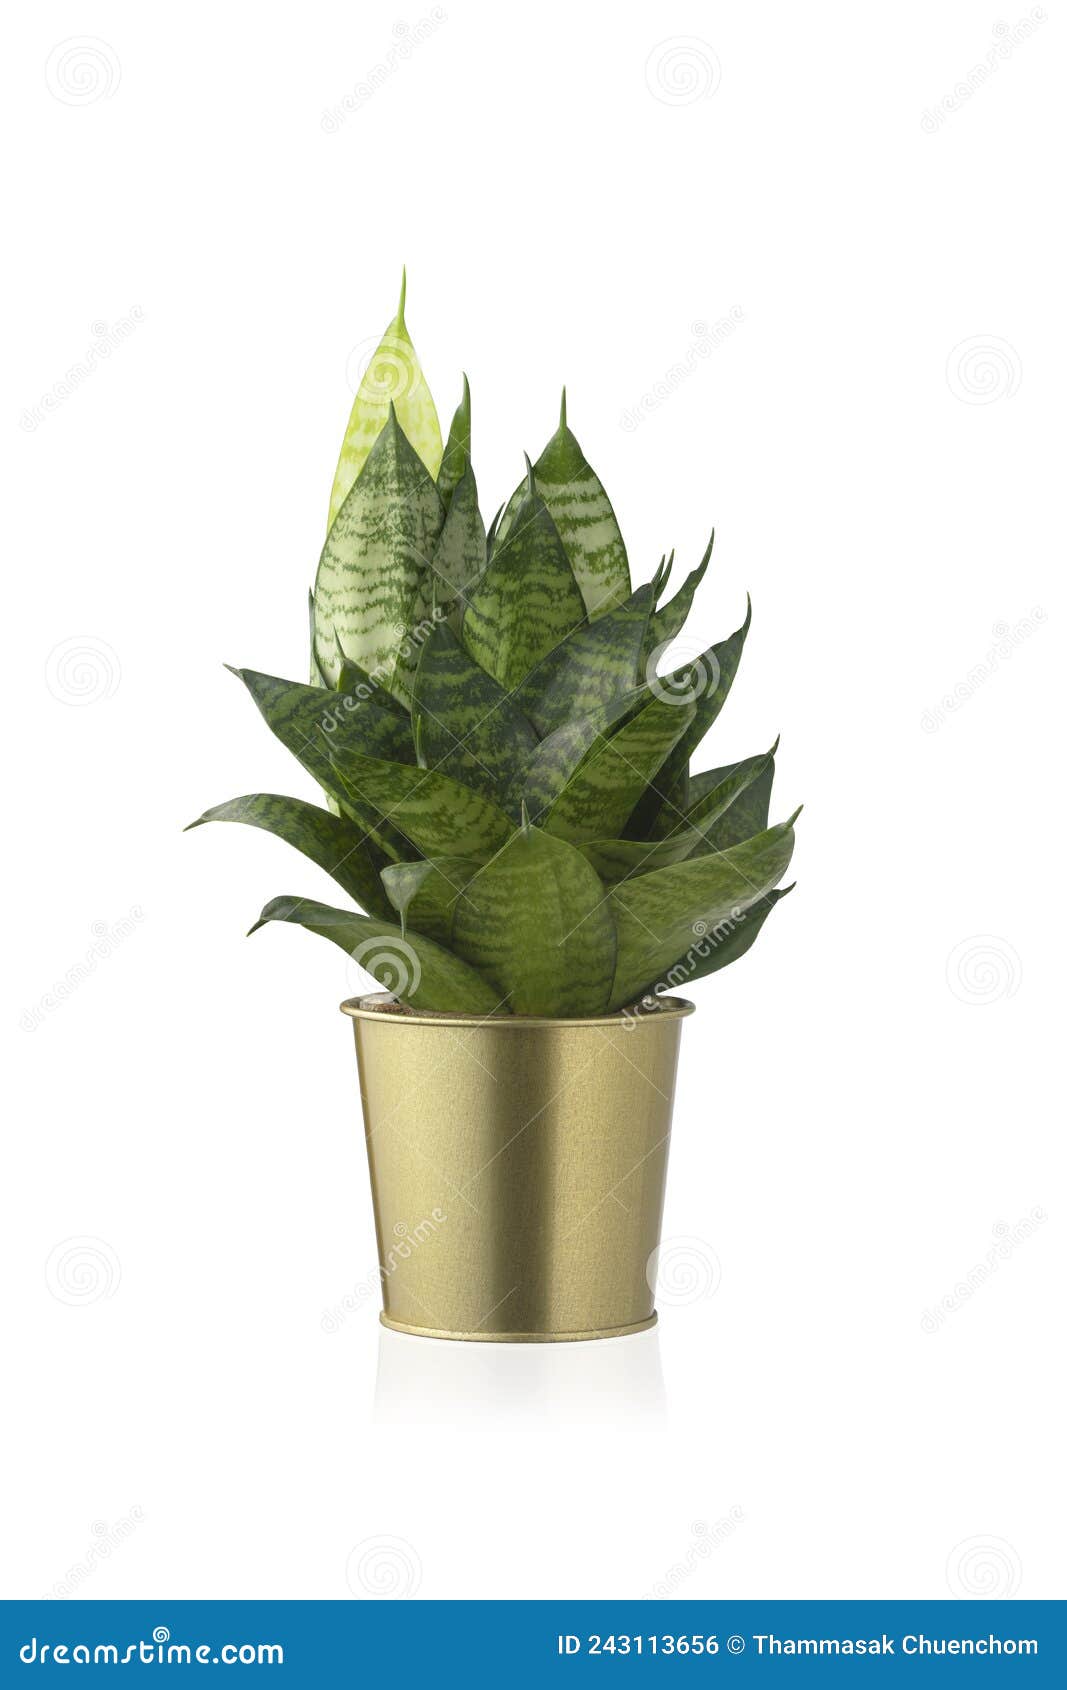 sansevieria trifasciata hahnii or snakeplant in gold shiny metal pot